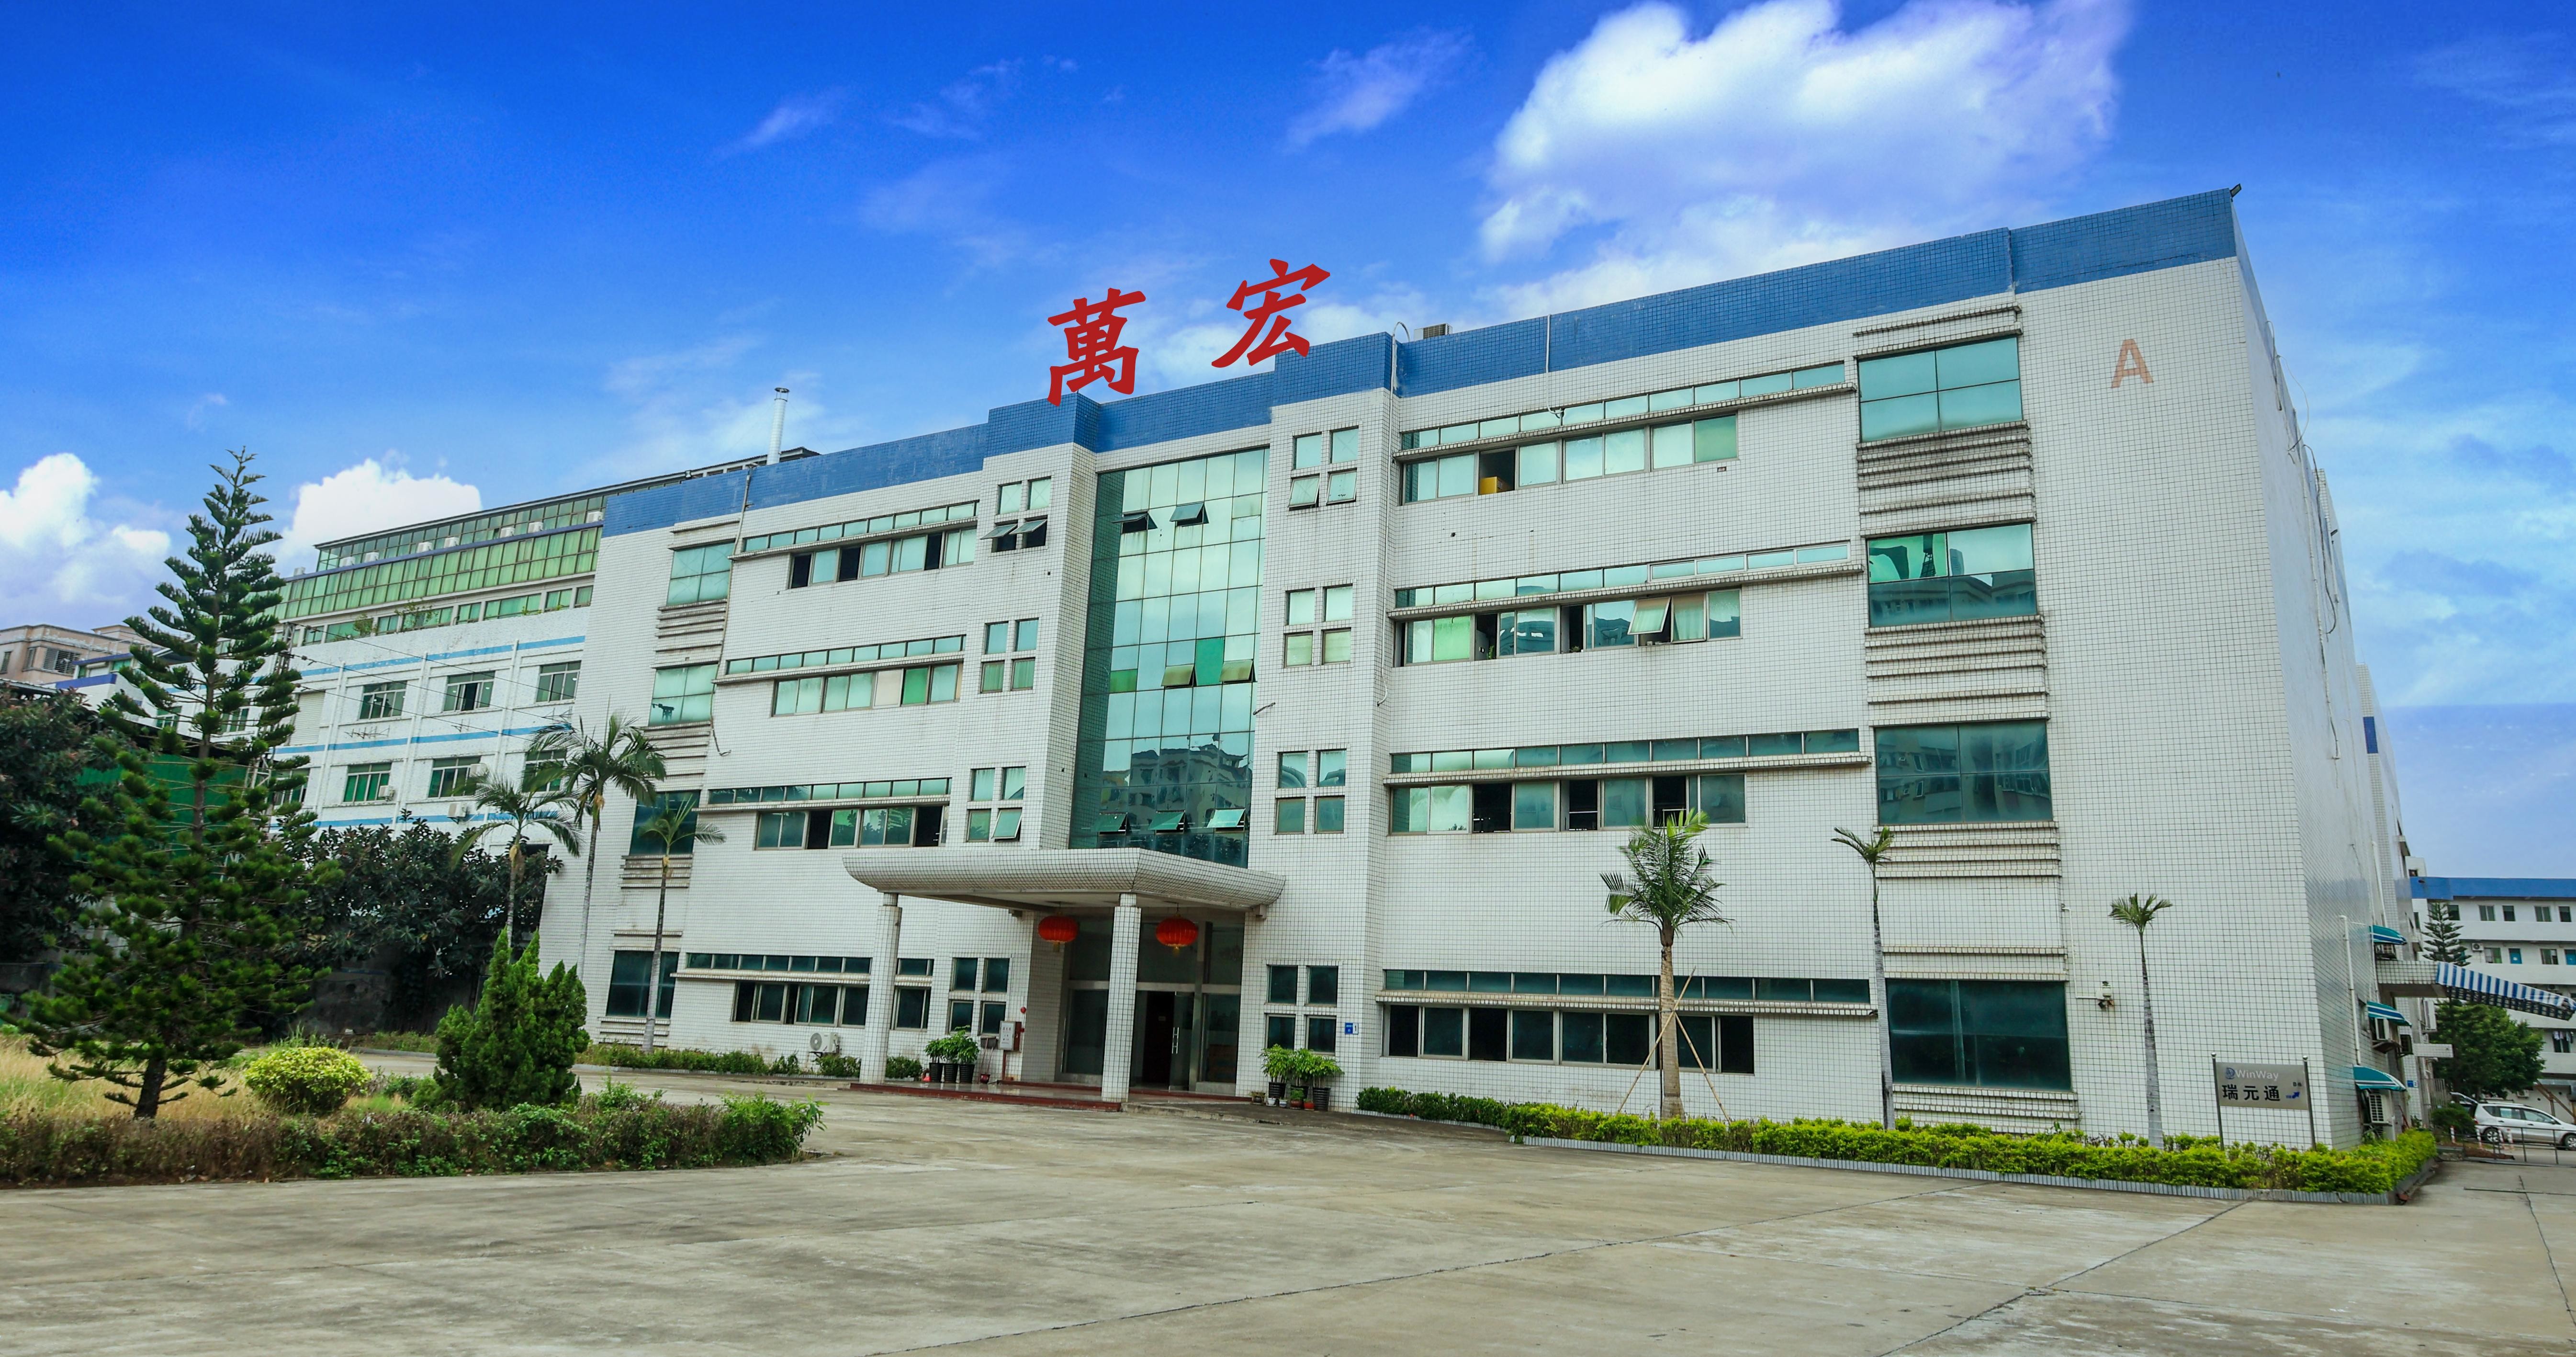 চীন Cheng Home Electronics Co.,Ltd সংস্থা প্রোফাইল